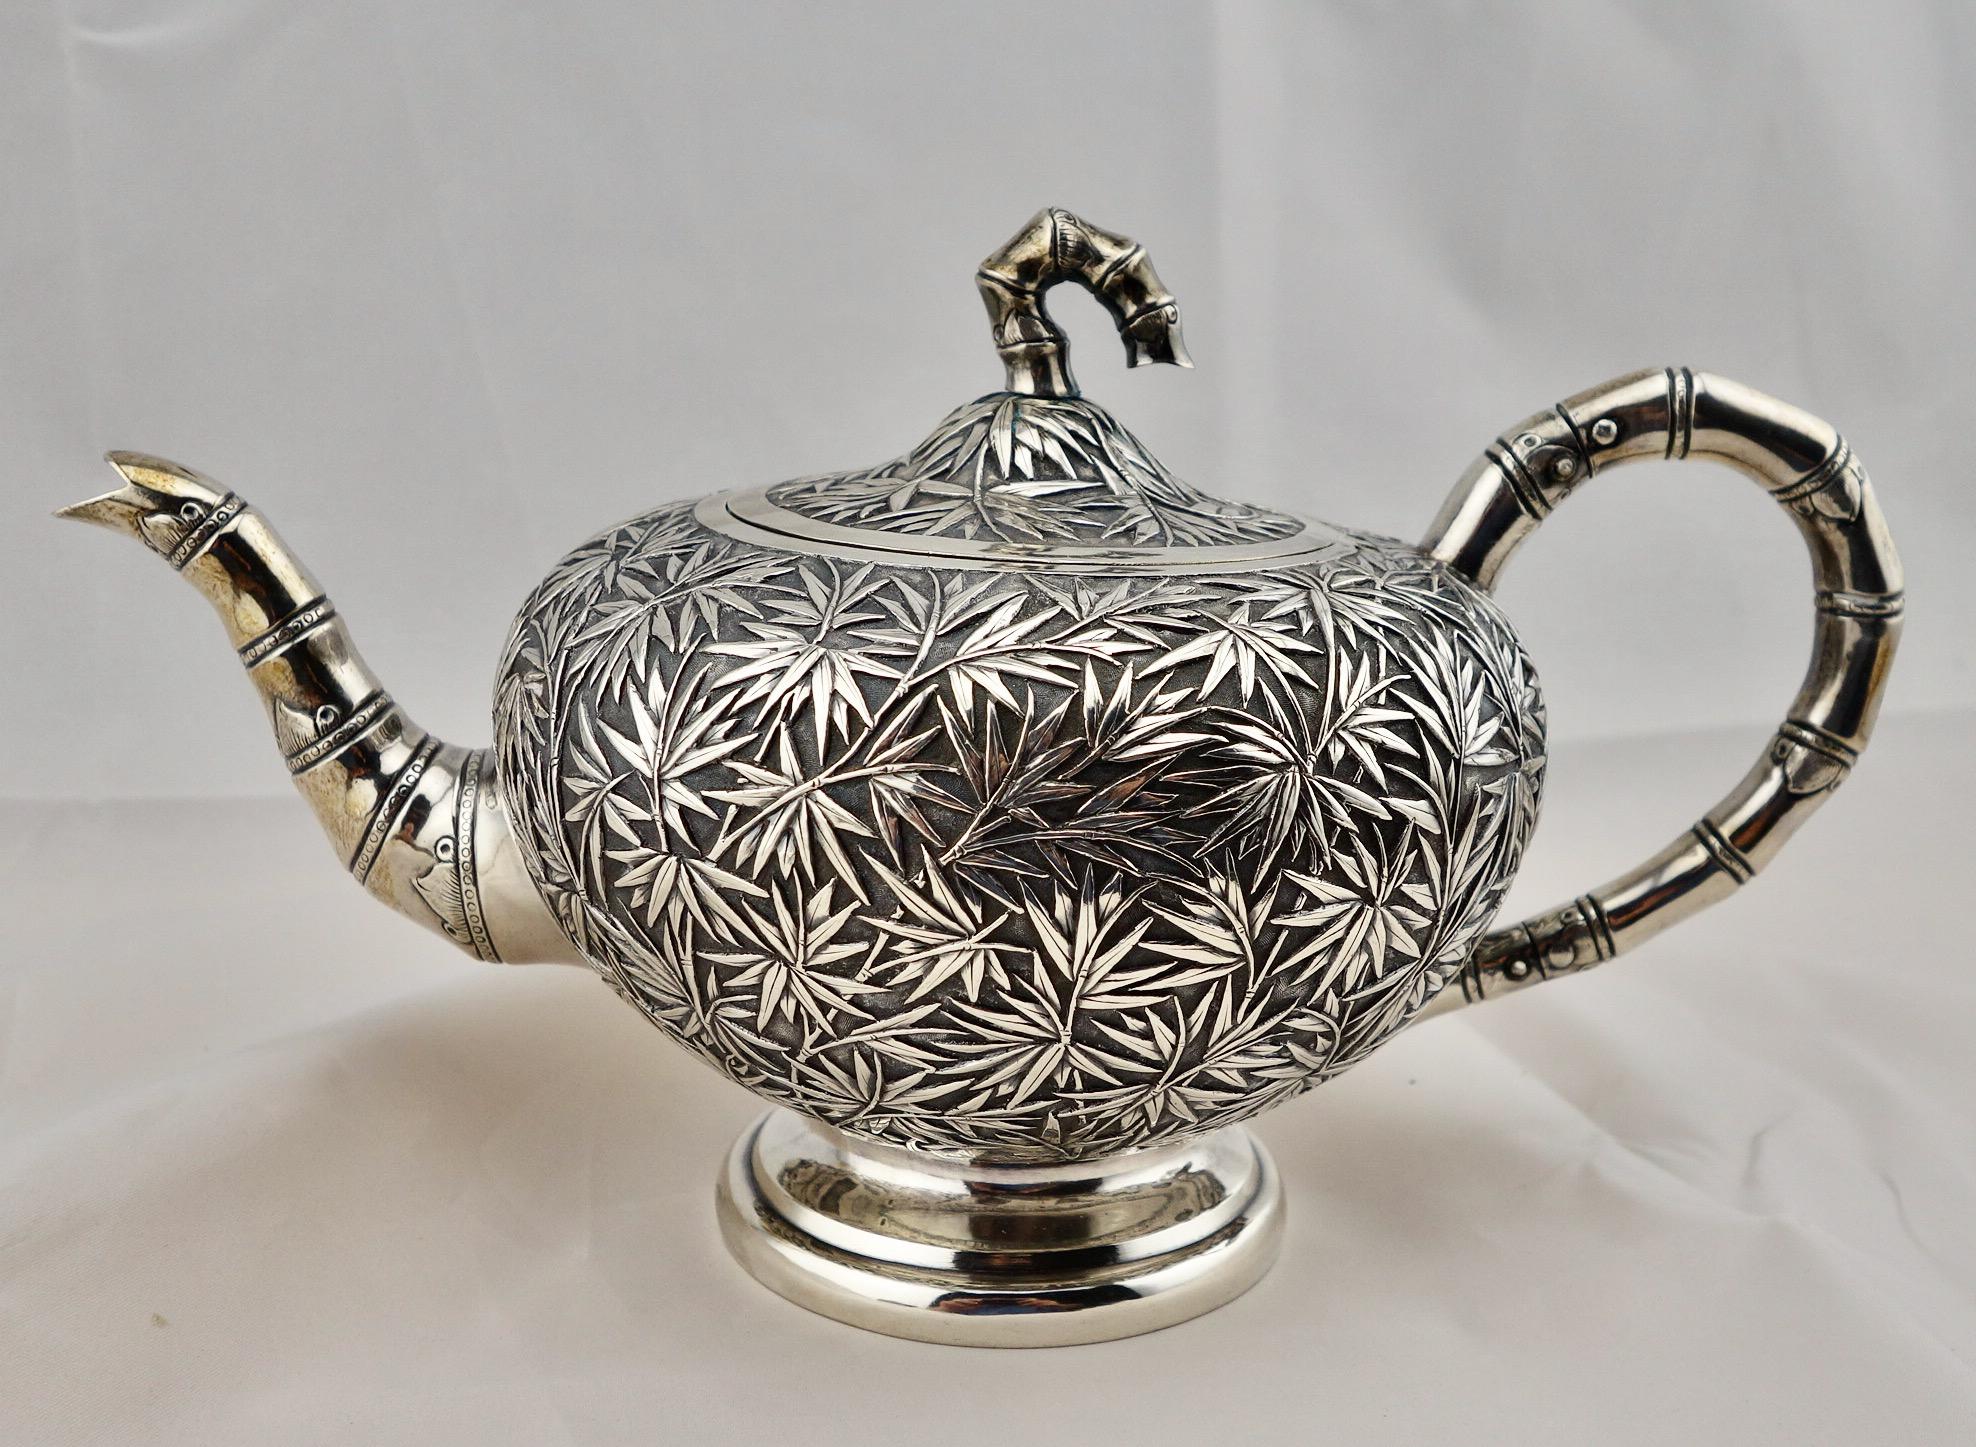 Service à thé de 5 pièces en argent, motif bambou, exporté de Chine, vers 1860-1880. La théière, le sucre couvert, le crémier et le bol à déchets sont marqués 